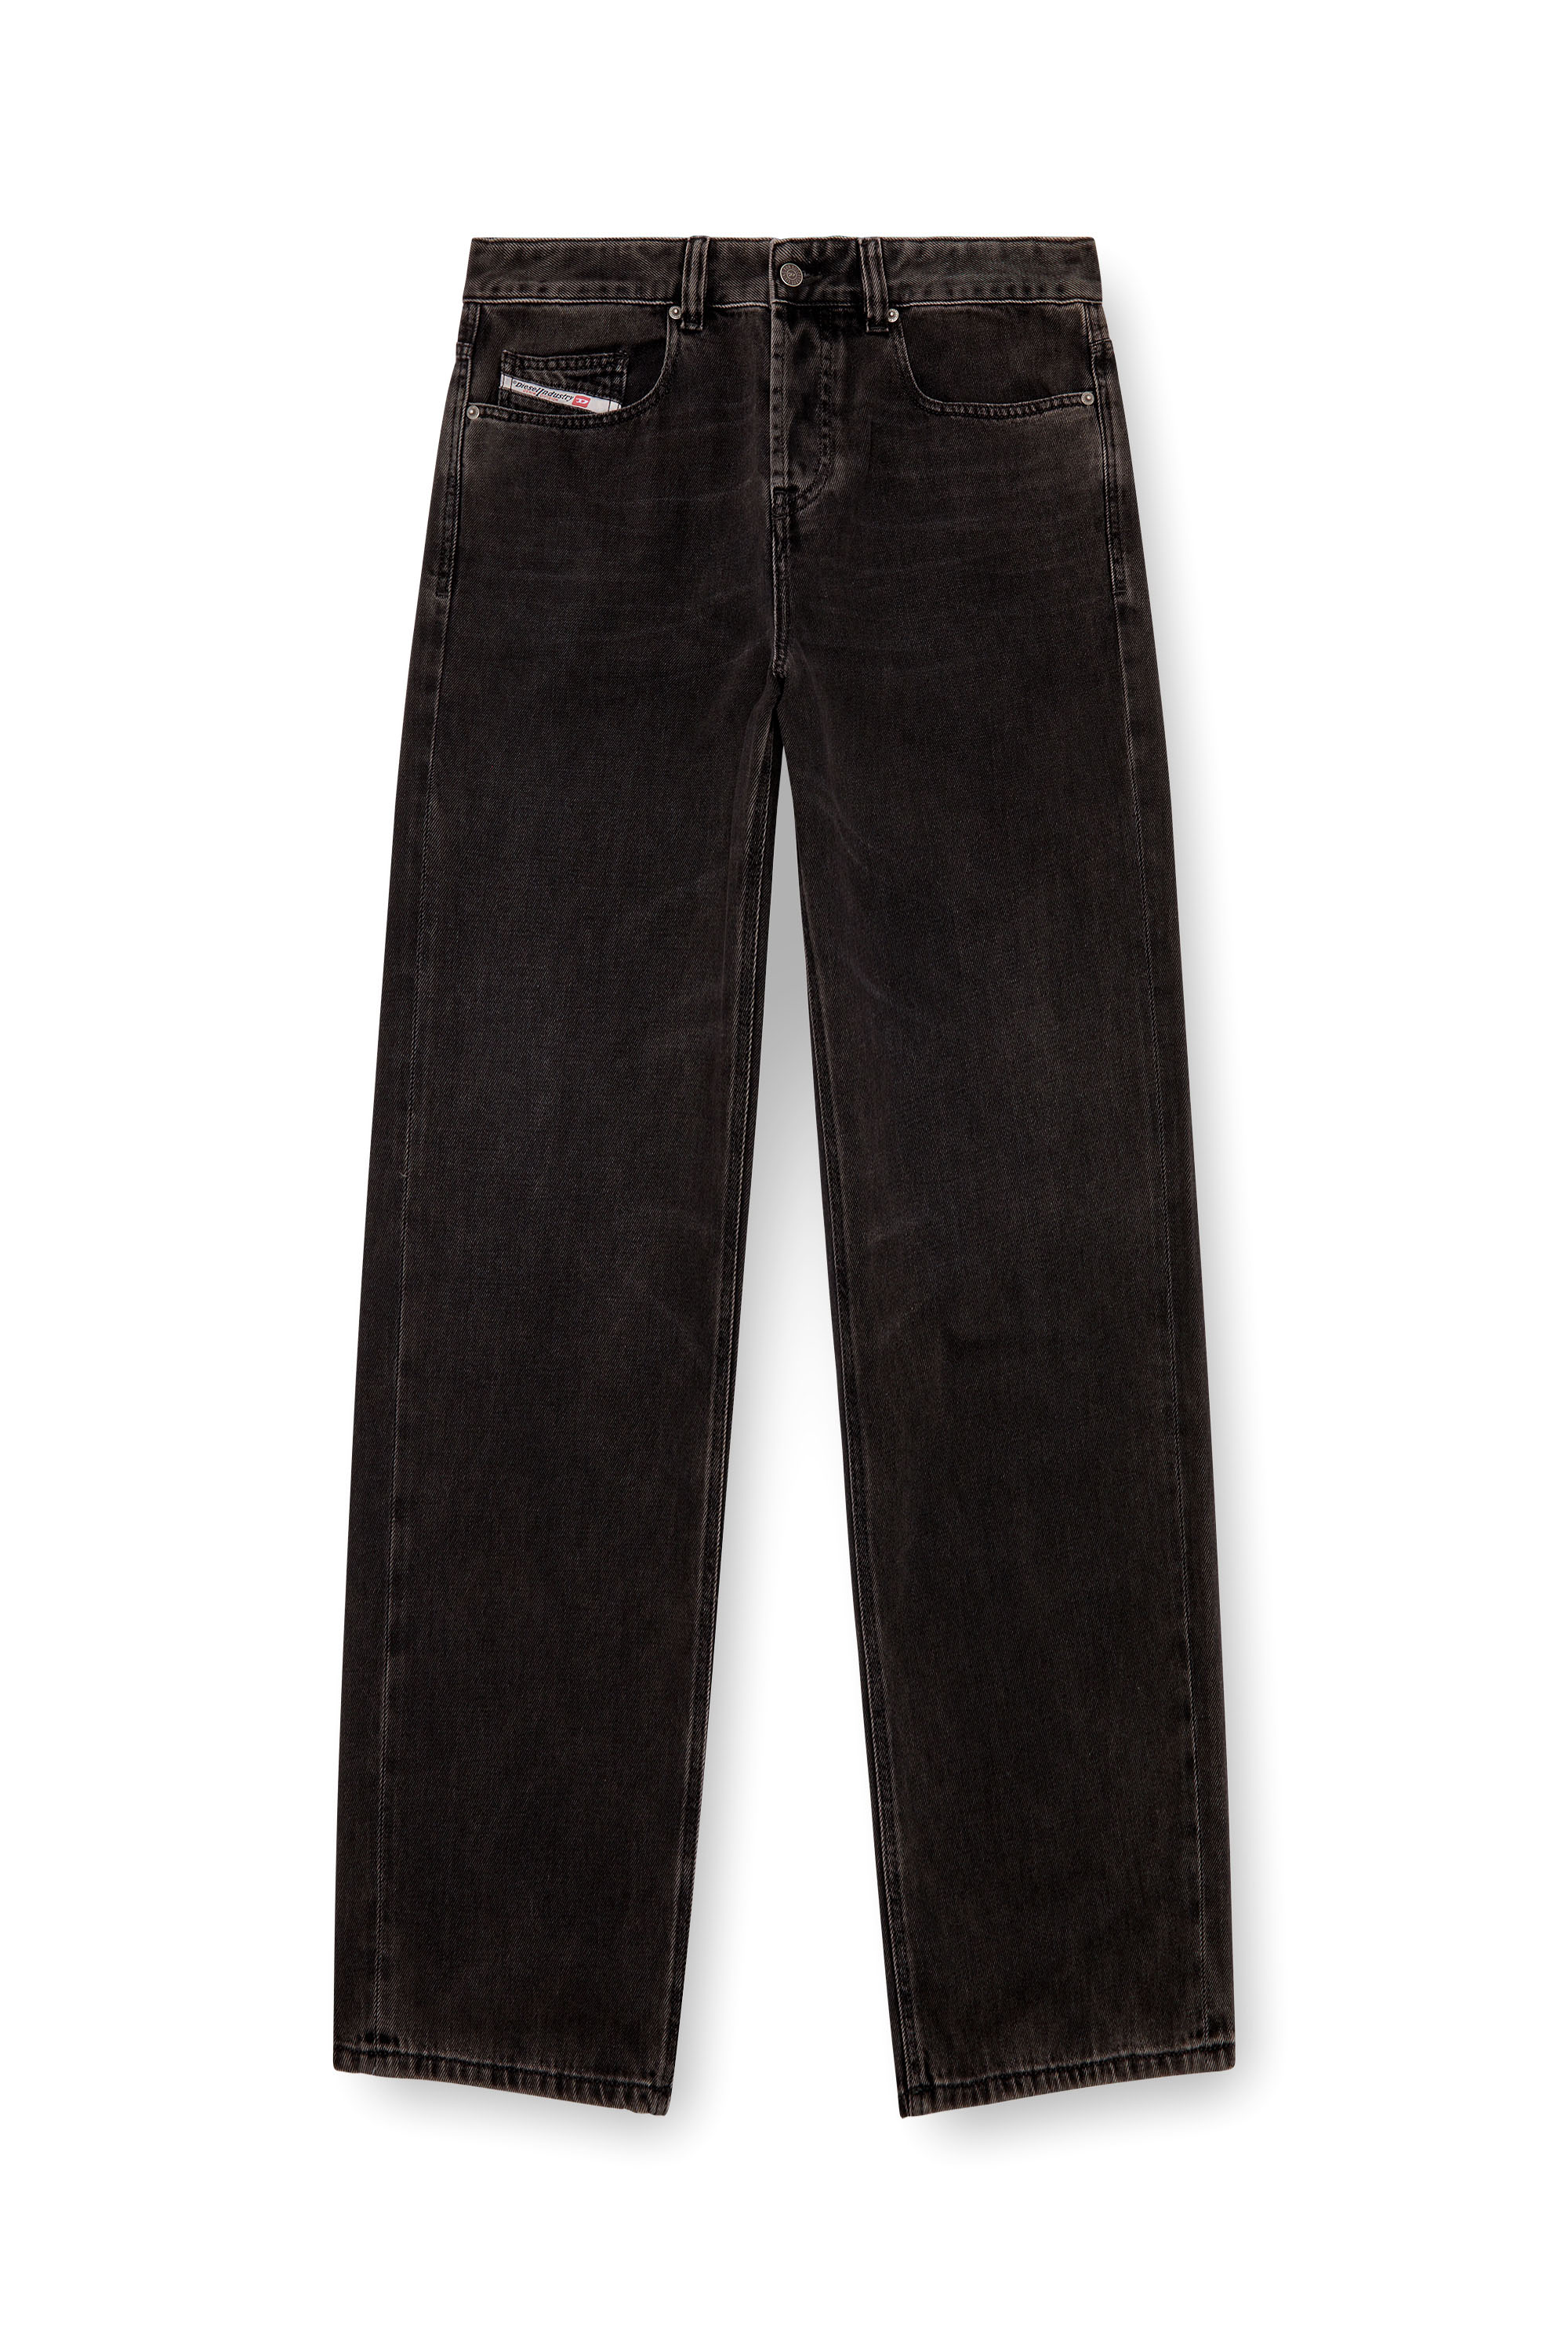 ワイドデニムDIESEL straight jeans 2001 d-macro 09h57